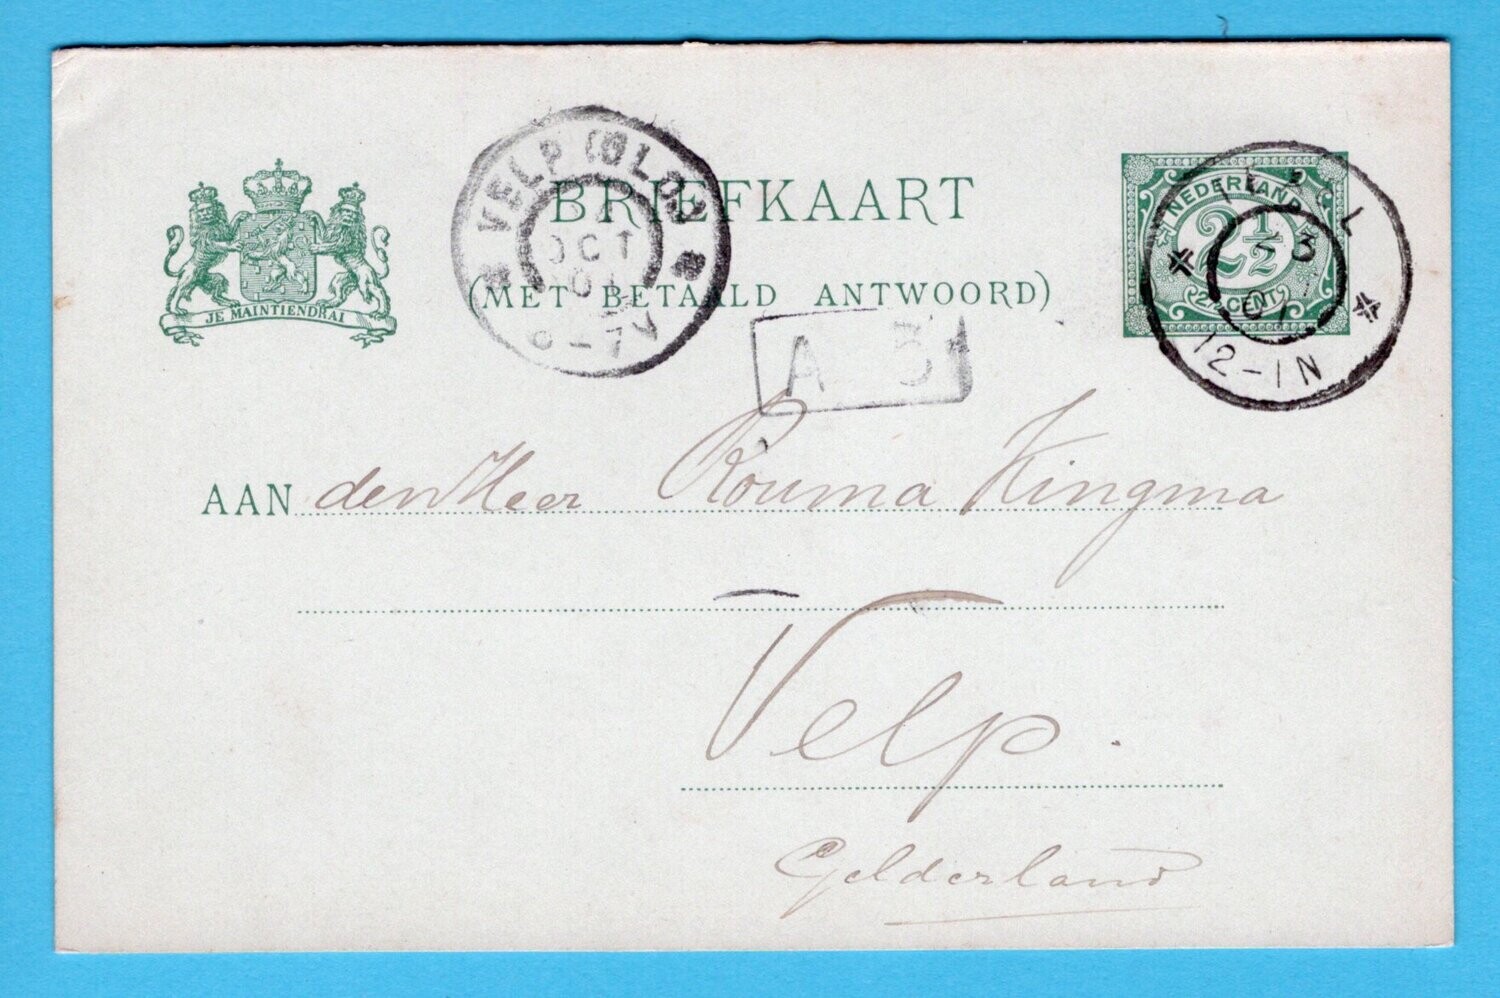 NEDERLAND briefkaart met antwoord 1901 Texel